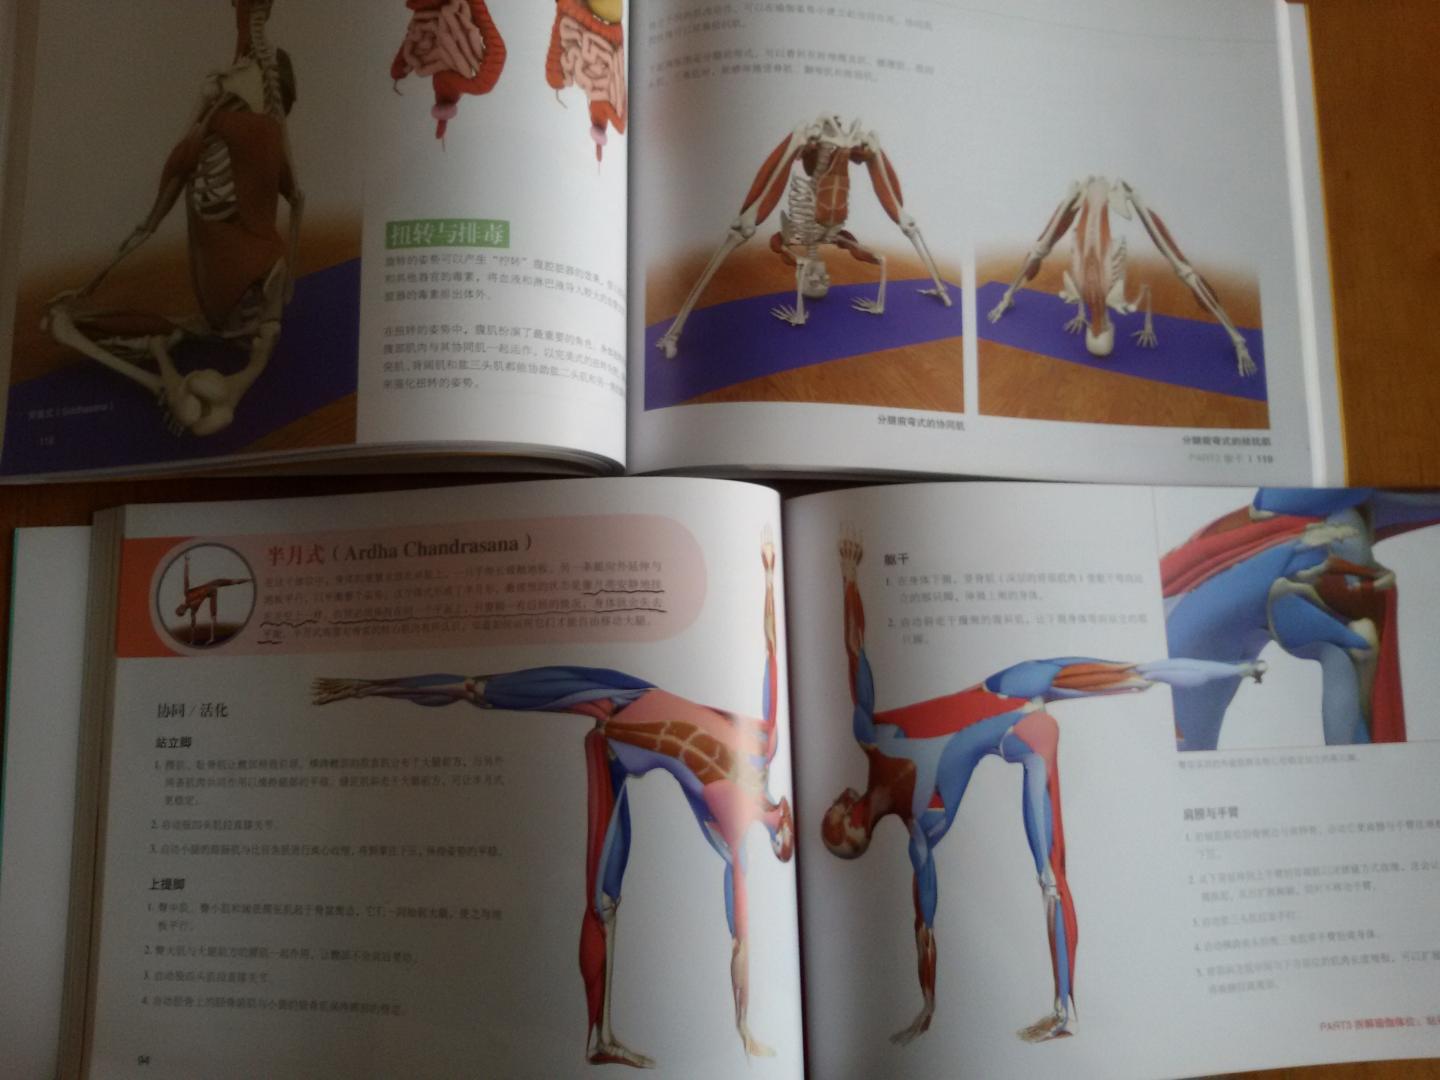 纸张很好，印刷很清楚，很专业的一套书，早就在寻找解剖书，终于找到了有瑜伽专业的解剖书了，太实用了，可以当字典一样学习并收藏，随时翻阅。五分好评，一级棒！